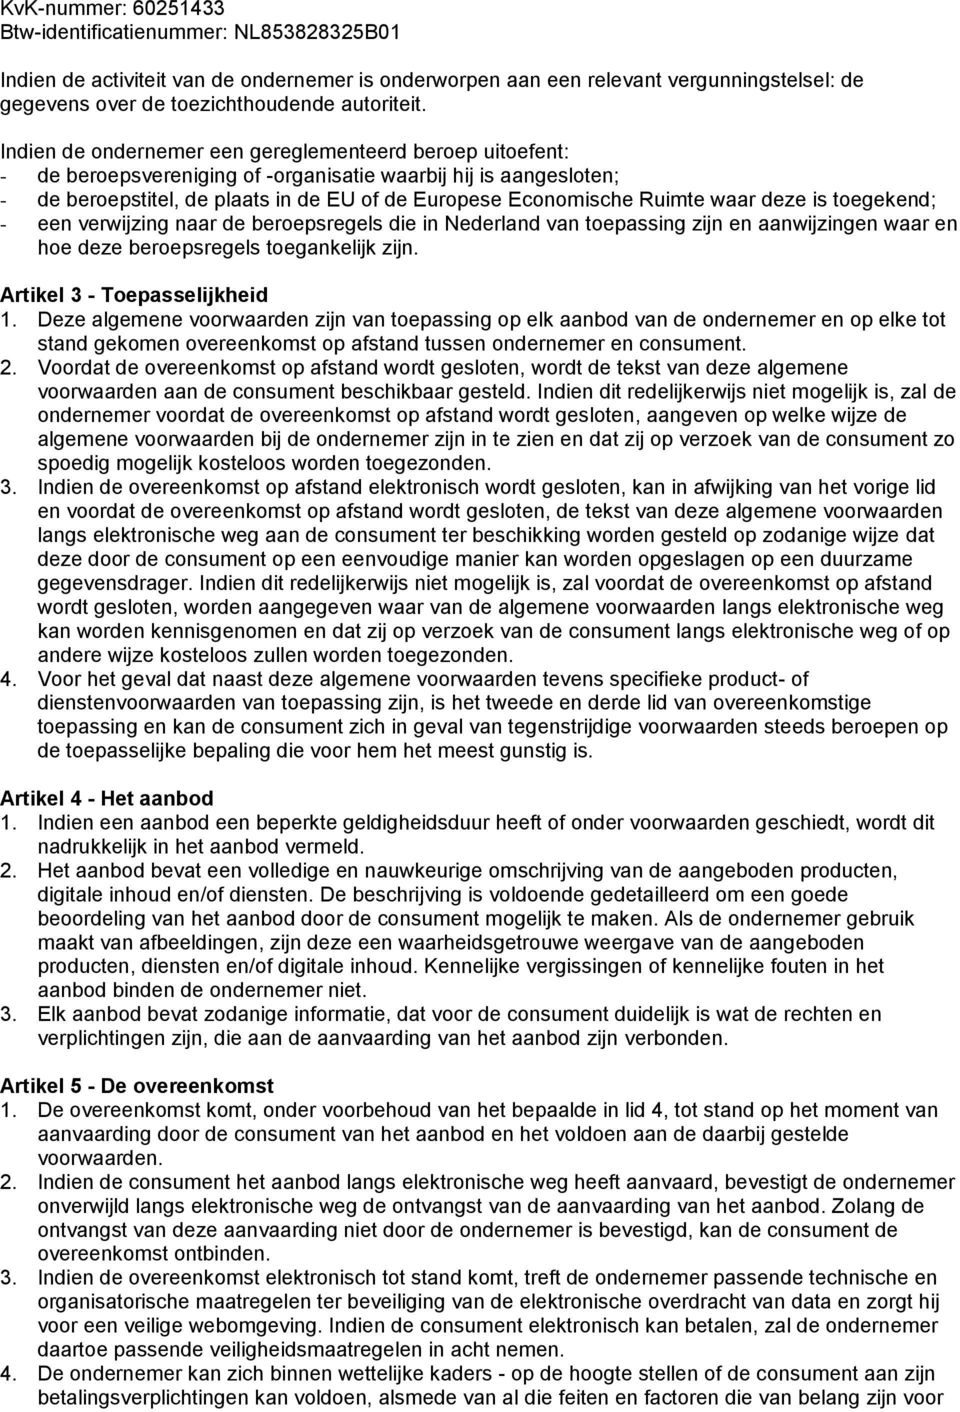 waar deze is toegekend; - een verwijzing naar de beroepsregels die in Nederland van toepassing zijn en aanwijzingen waar en hoe deze beroepsregels toegankelijk zijn. Artikel 3 - Toepasselijkheid 1.